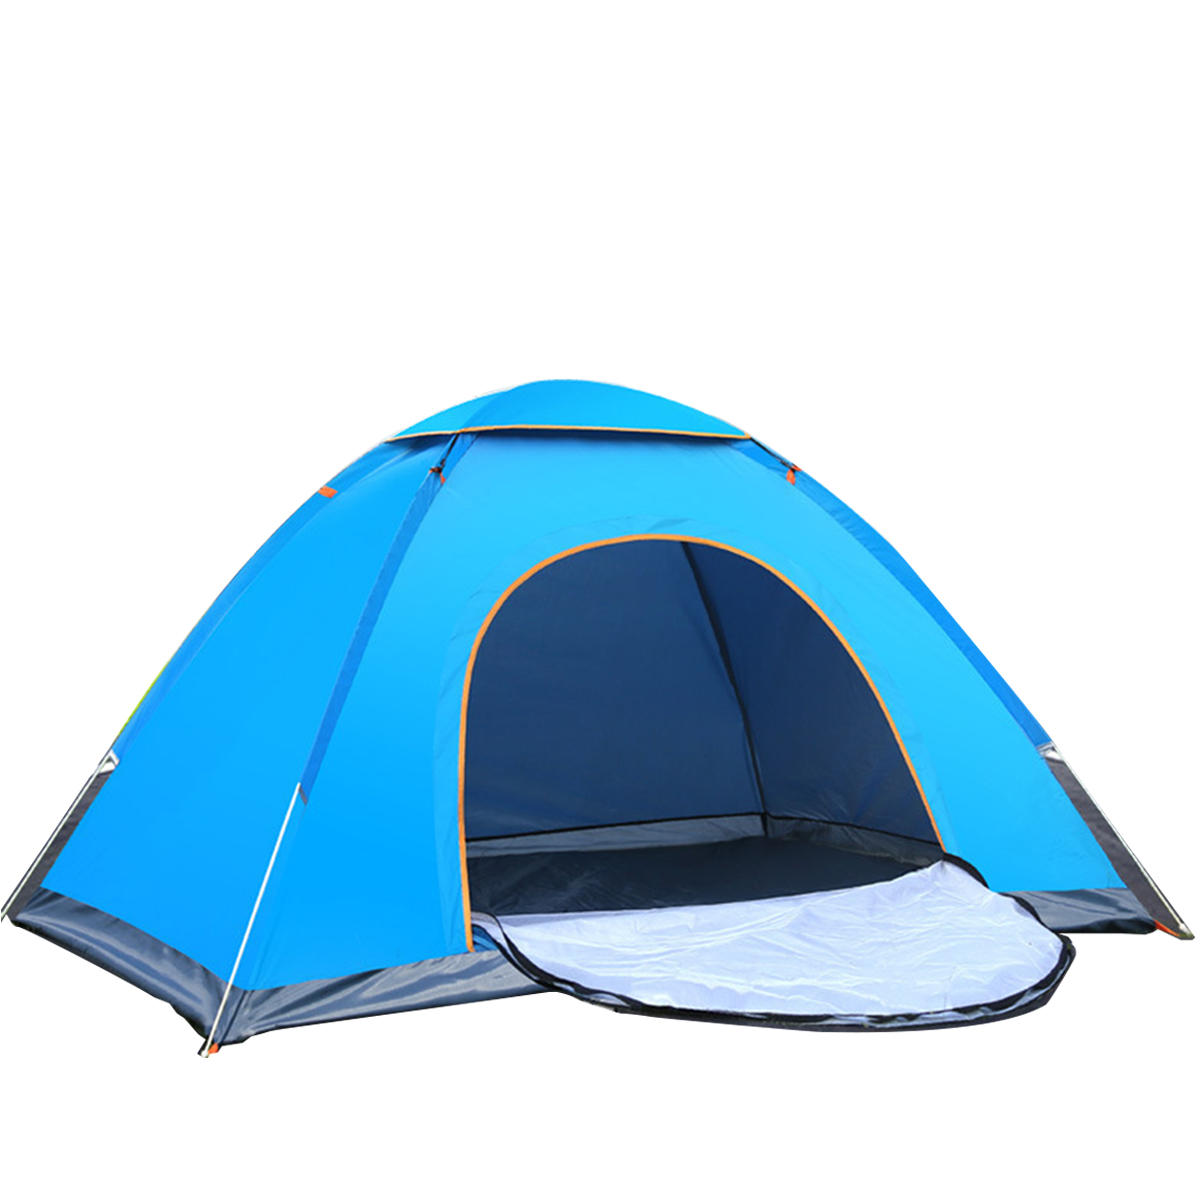 IPRee® Barraca de camping dobrável automática para 2-3 pessoas, à prova de sol e água, para pesca, caminhadas e viagens ao ar livre.